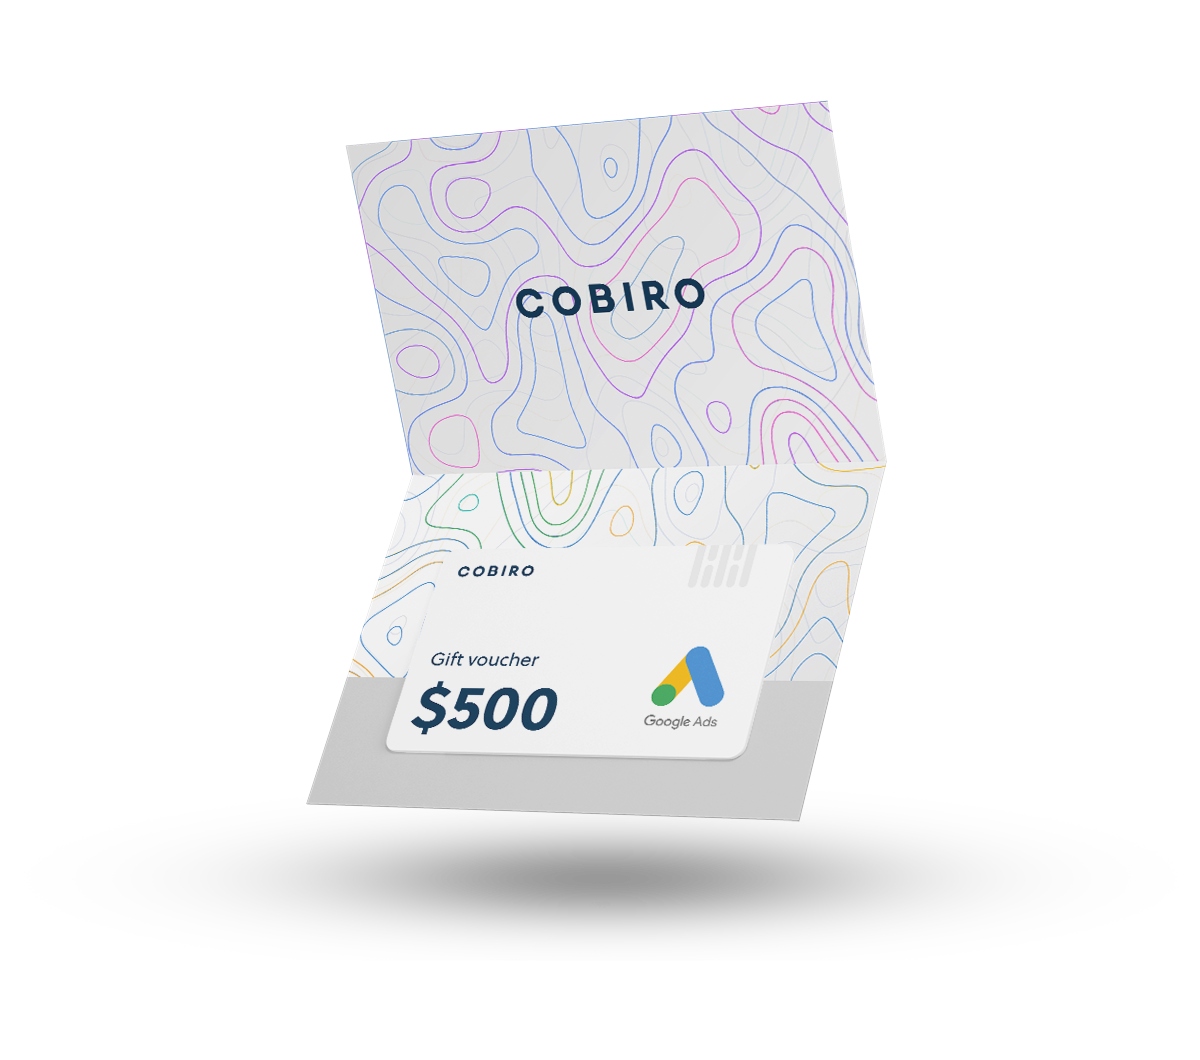 Cobiro $500 voucher for Google Ads